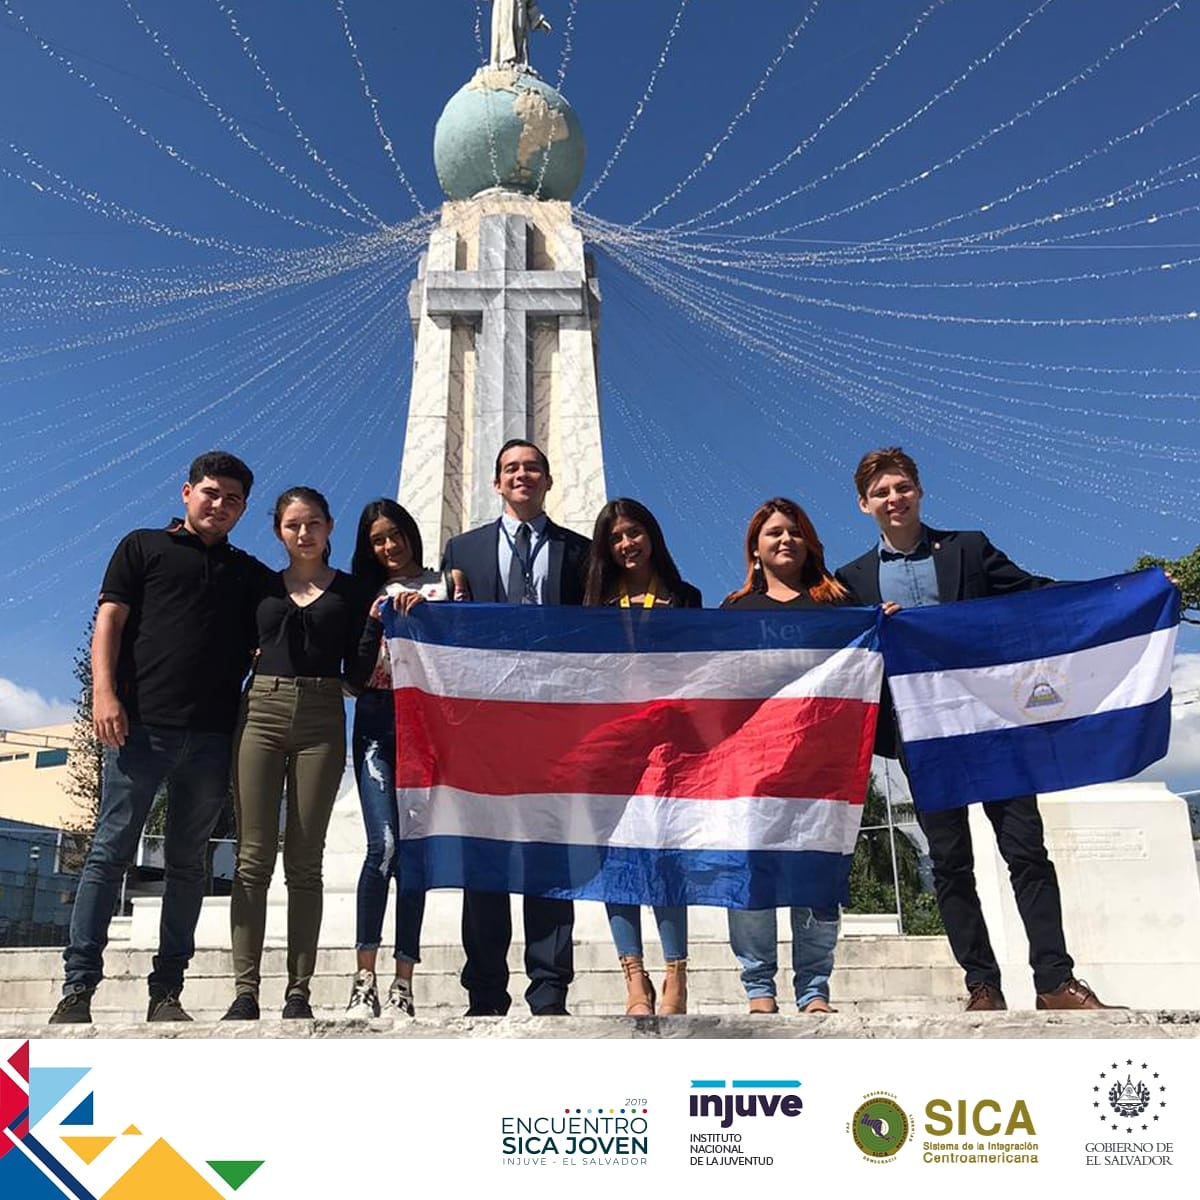 Ya estamos recibiendo a nuestros hermanos centroamericanos. 🙌
Listos para nuestro primer Encuentro Regional de Jóvenes #SICAJOVEN INJUVE - El Salvador. 🙆‍♂️🙆‍♀️ #RegiónDeOportunidades #GobiernoJoven